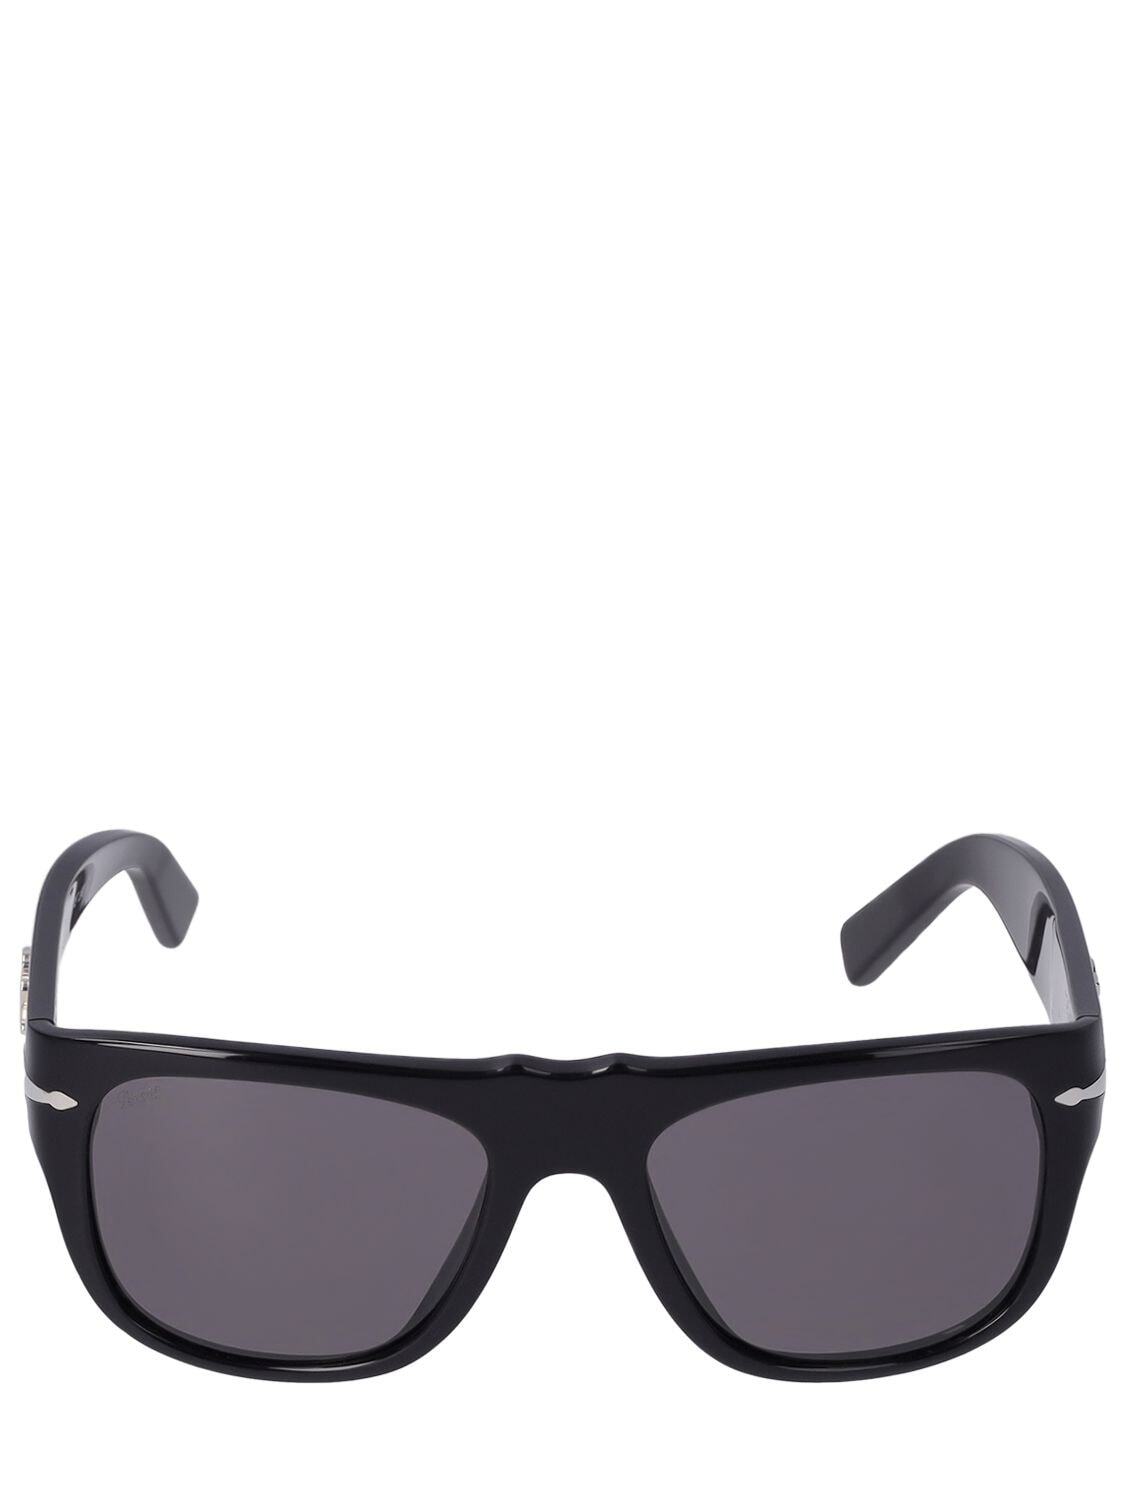 DOLCE & GABBANA D&g X Persol Squared Acetate Sunglasses in black / grey